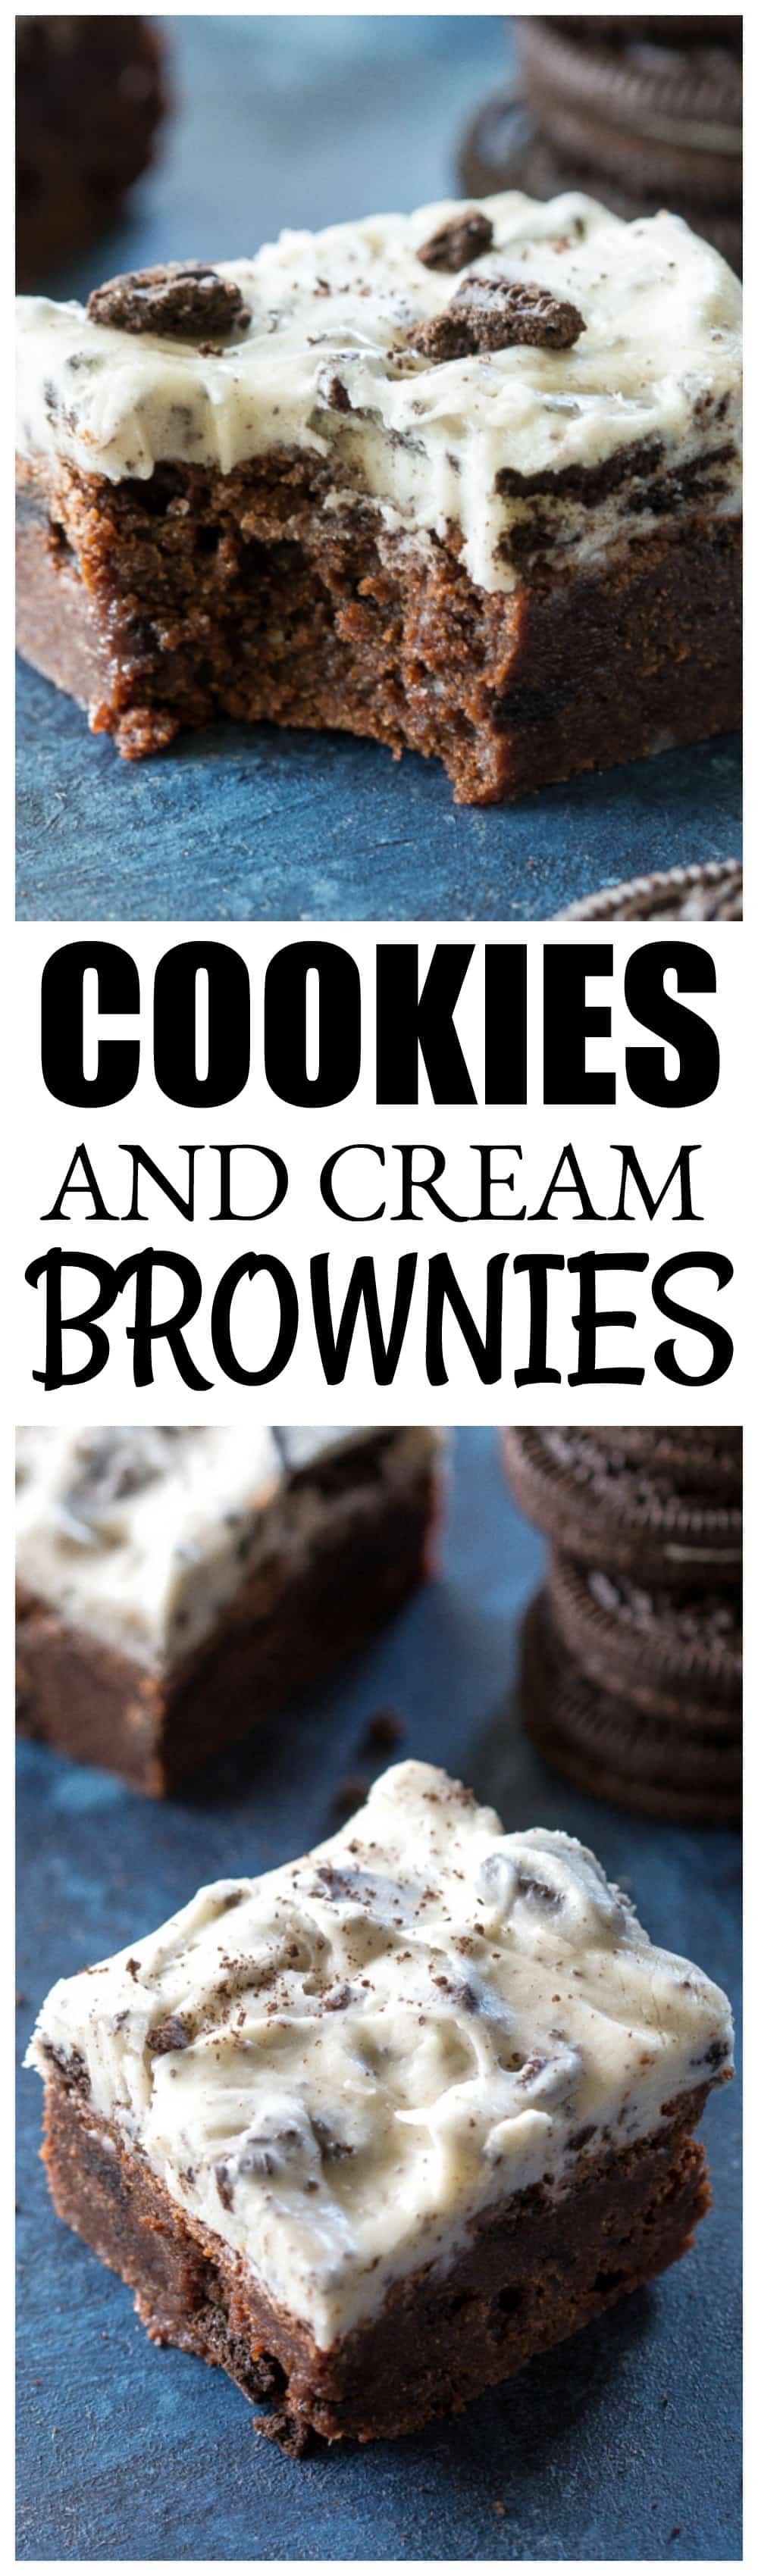 Cookies and Cream Brownies - ricos brownies de chocolate com cobertura cremosa de Oreo.  a-garota-que-comeu-tudo.com